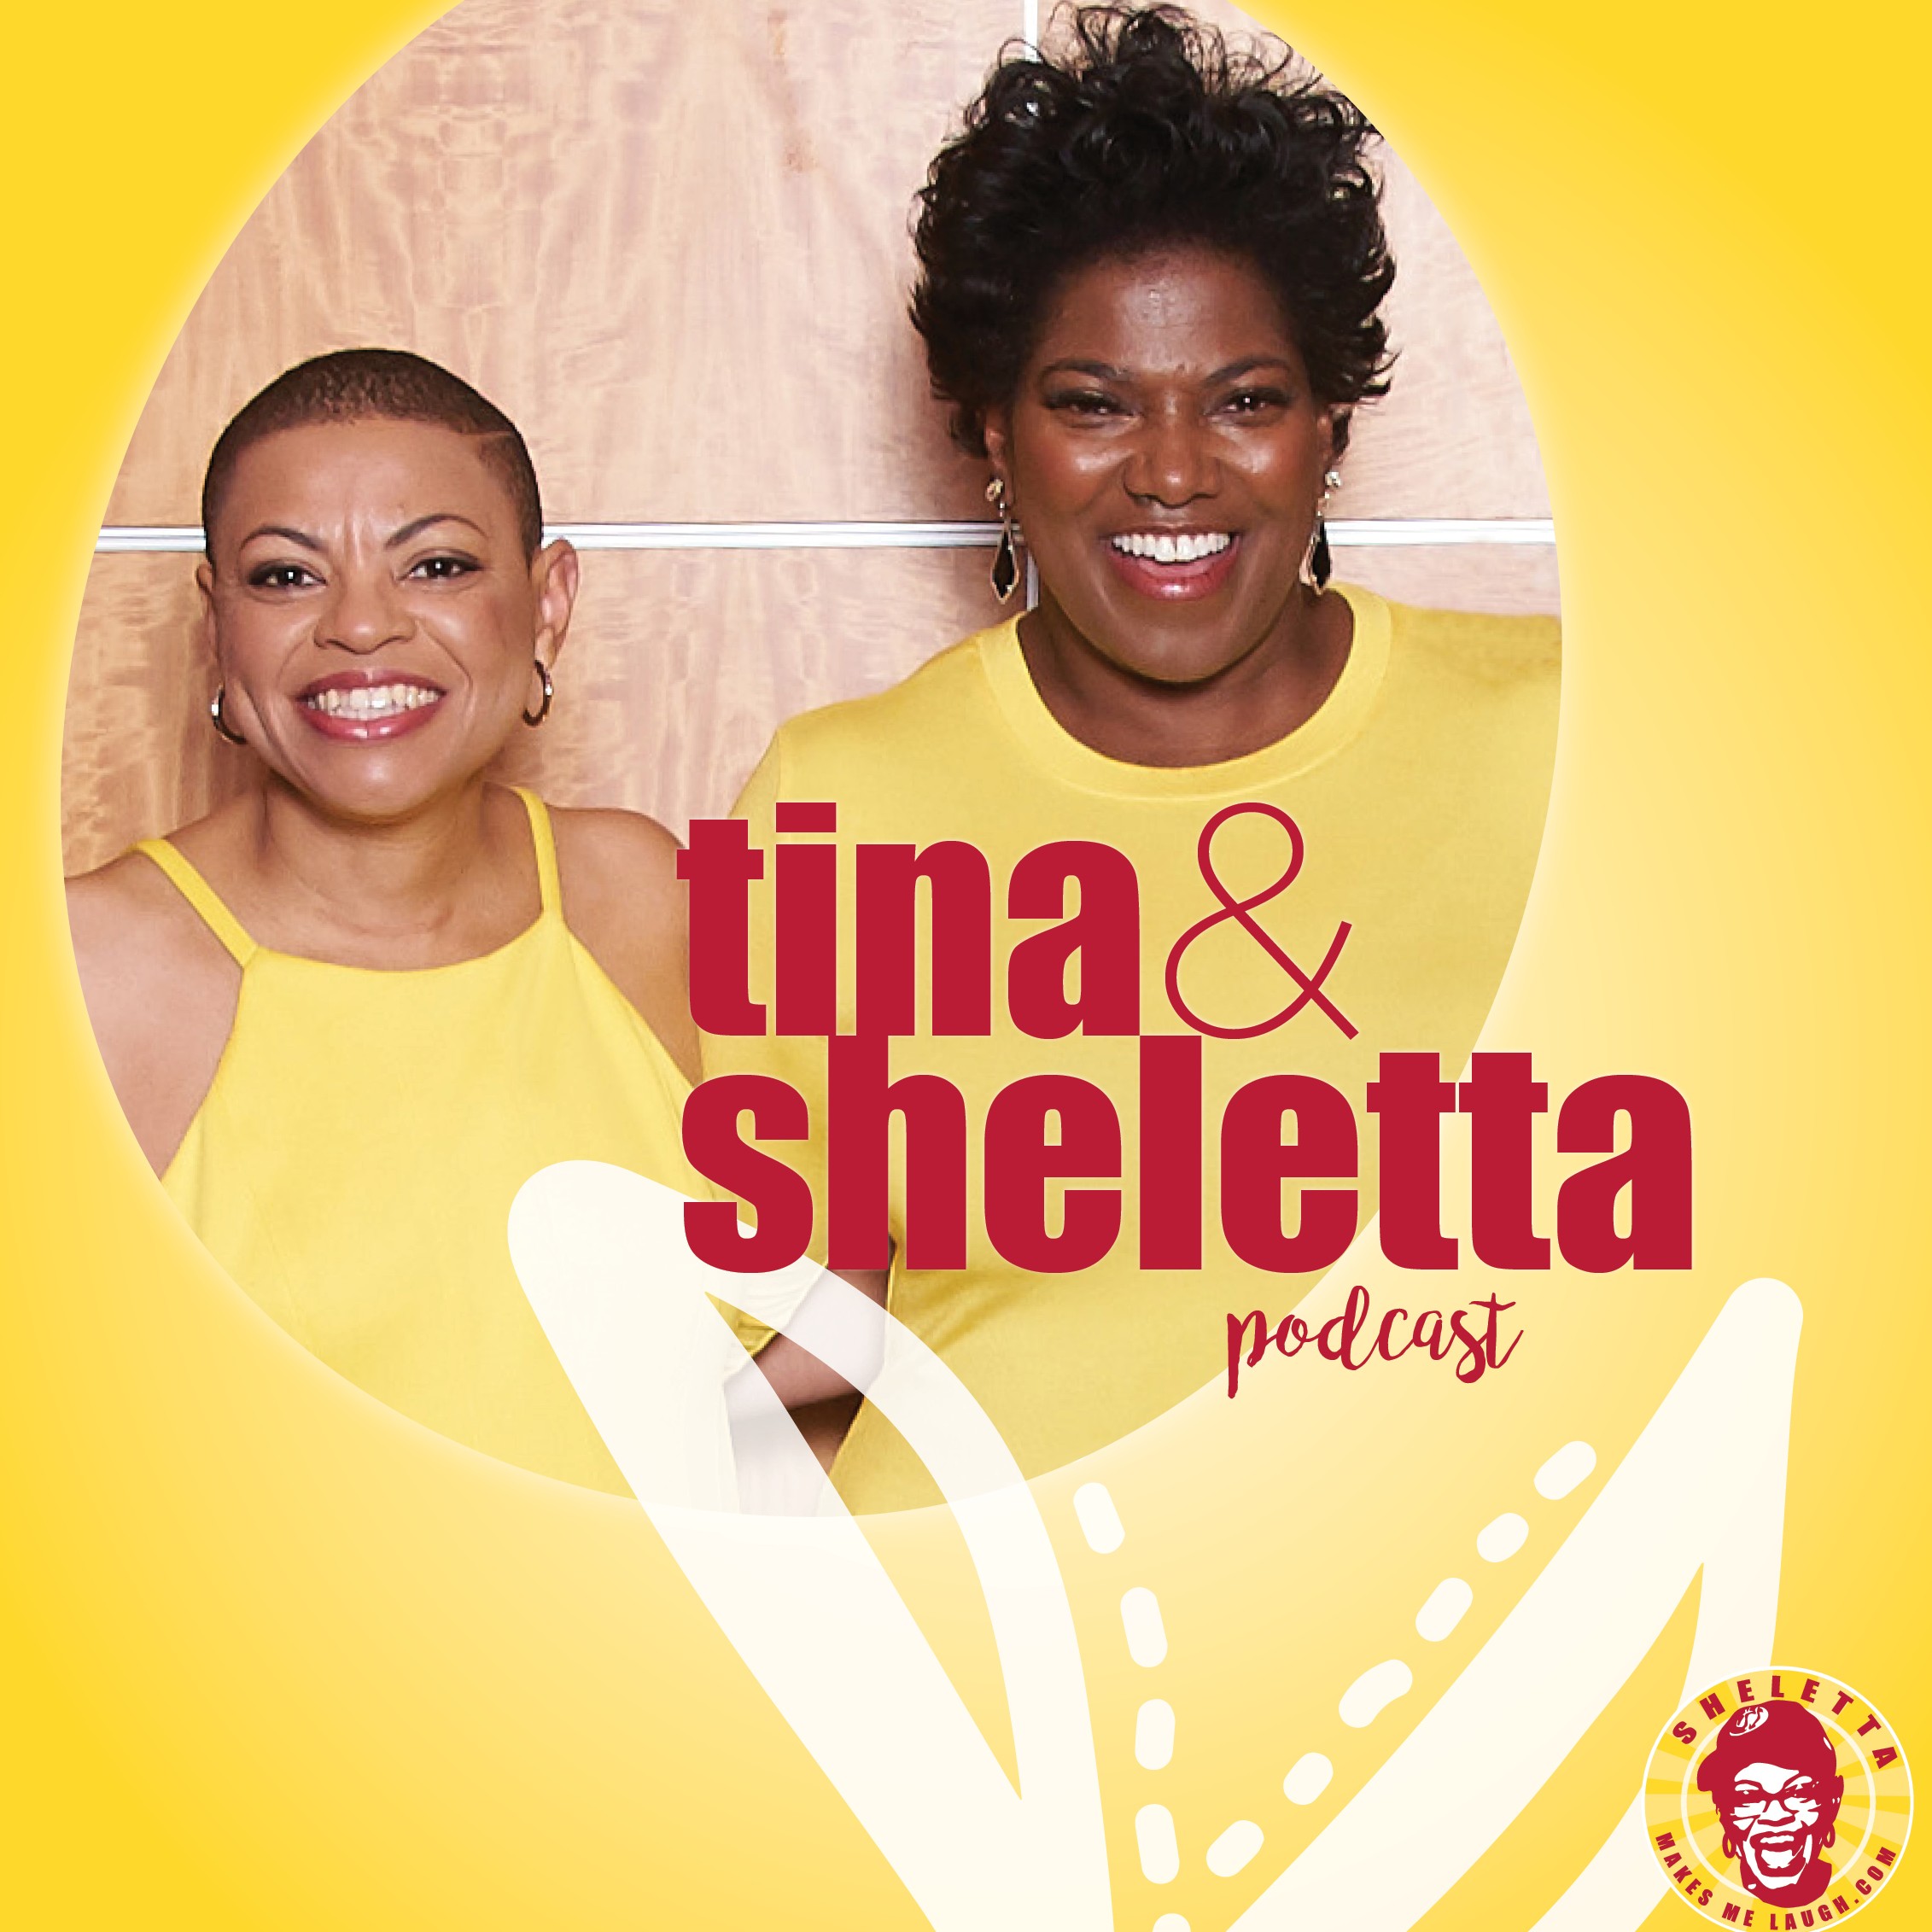 Tina & Sheletta